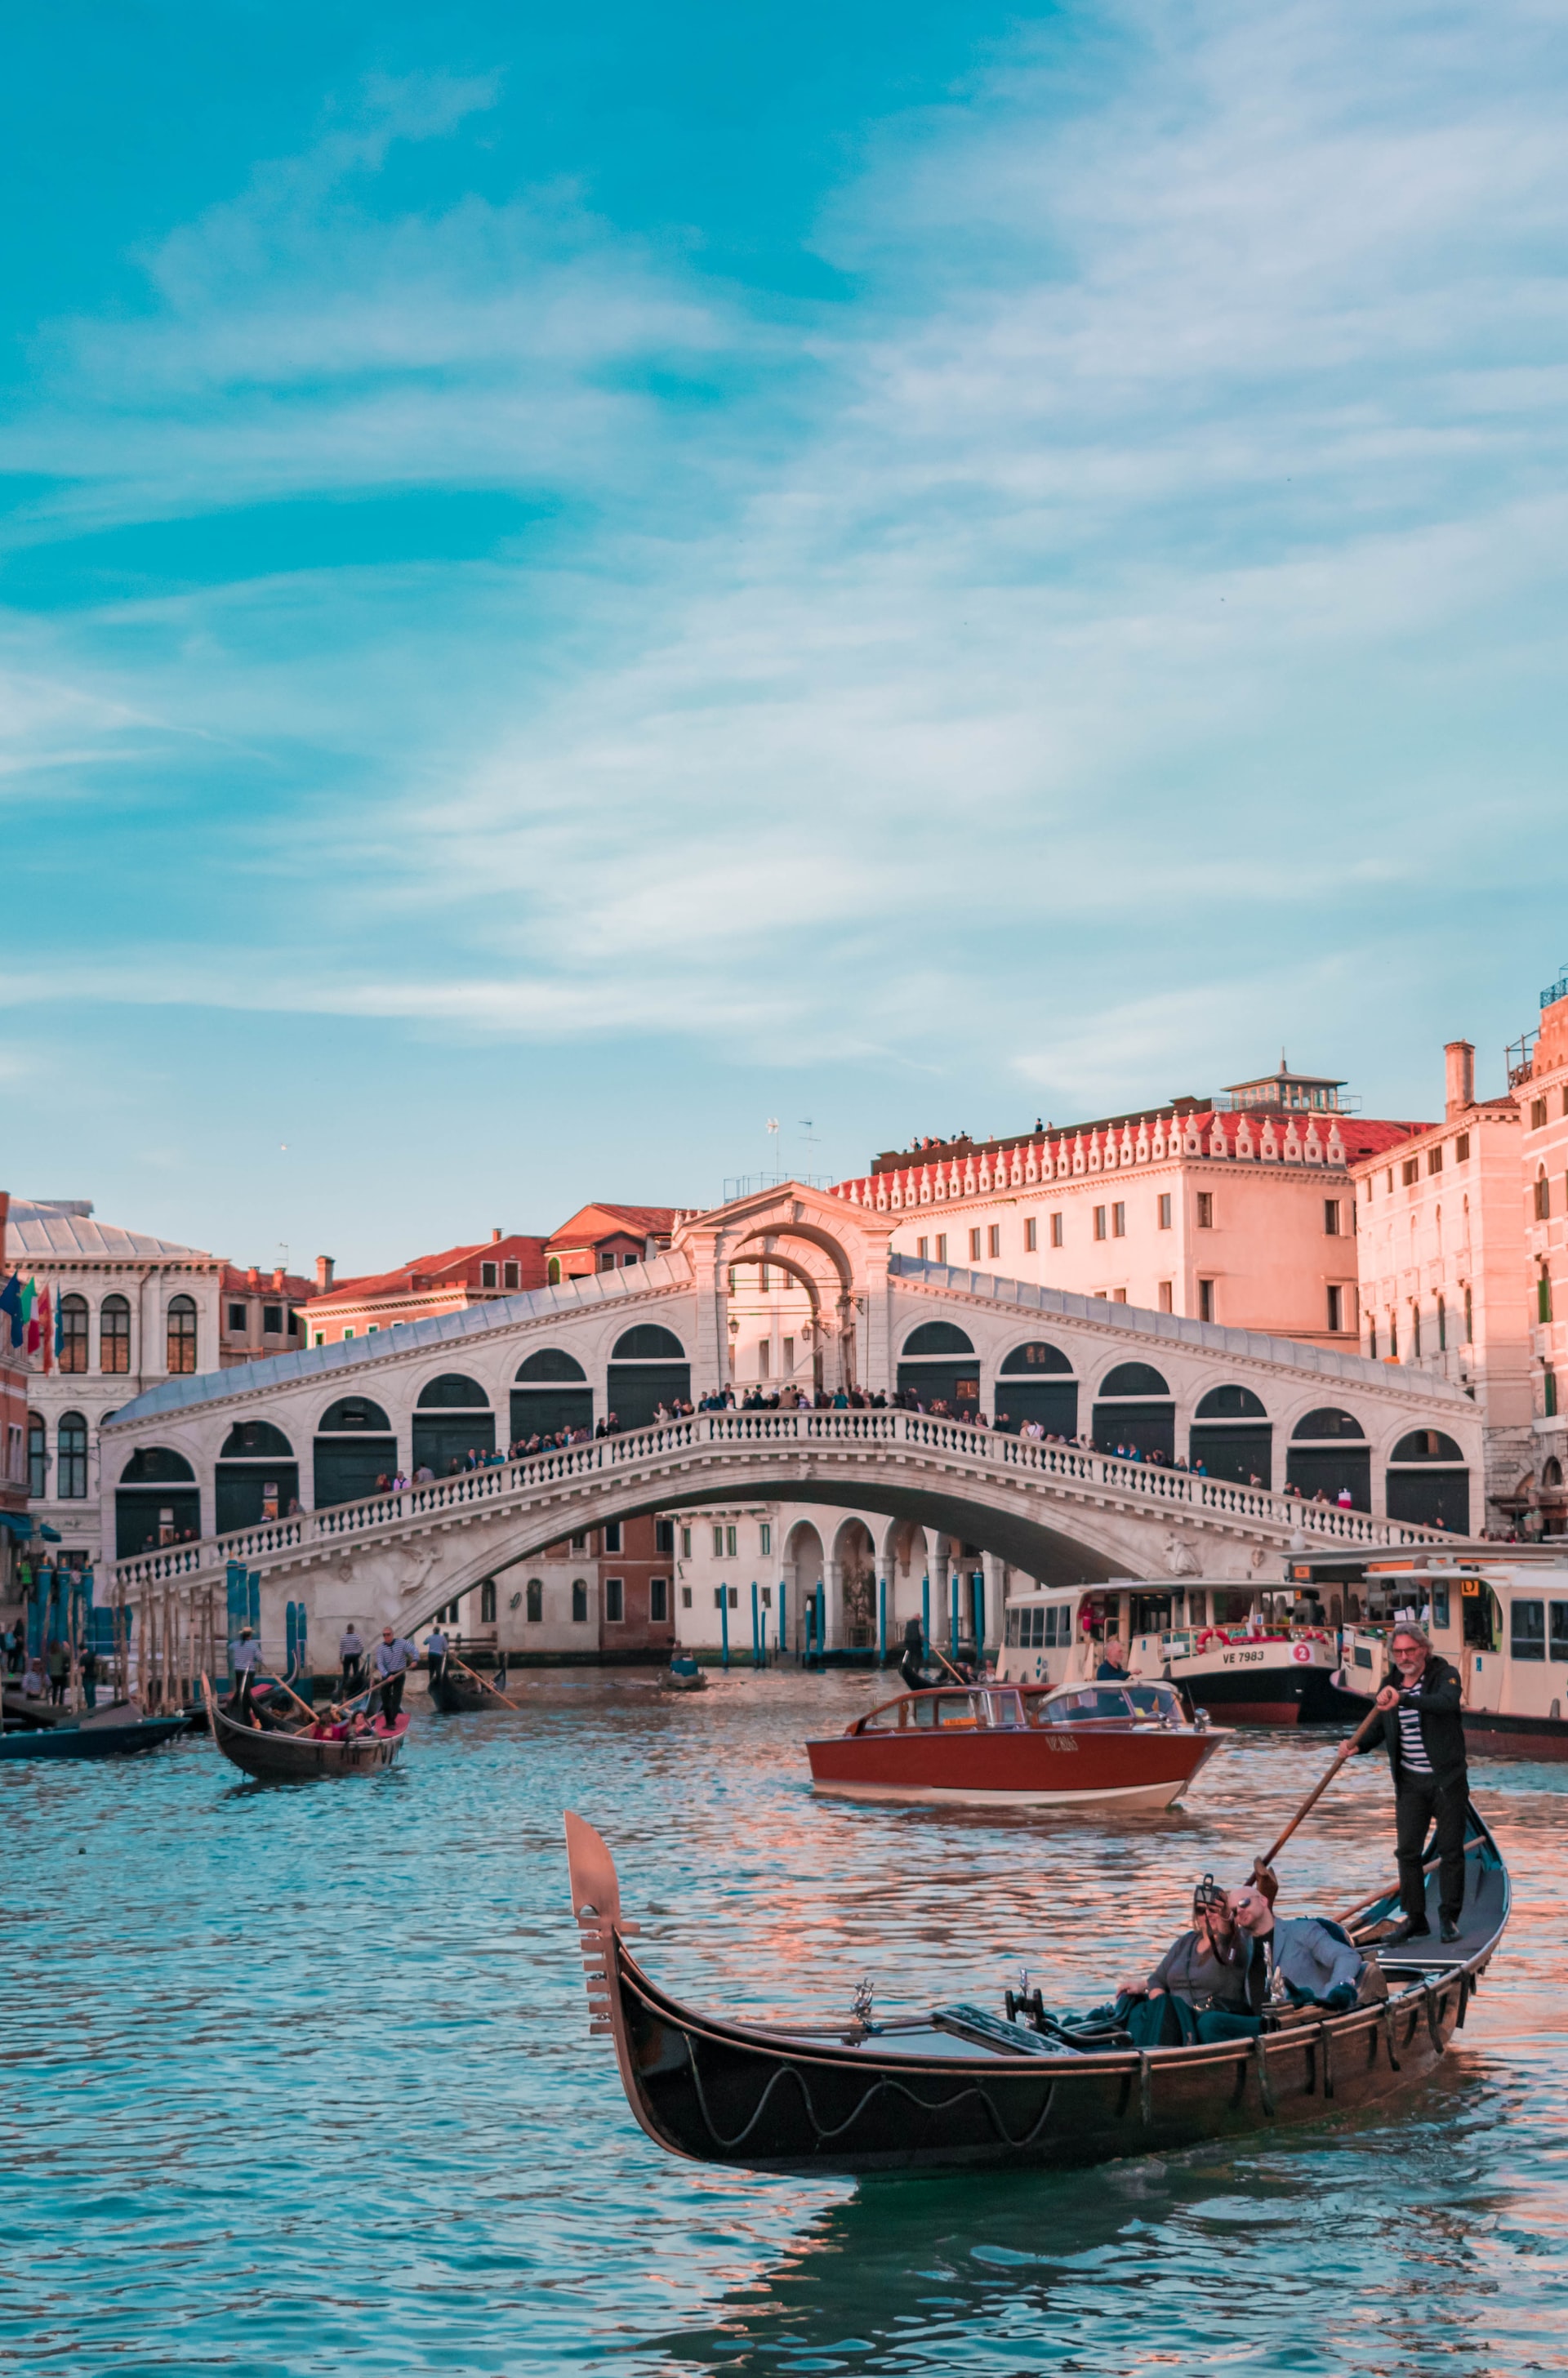 Rialto Bridge, Venezia, Italy